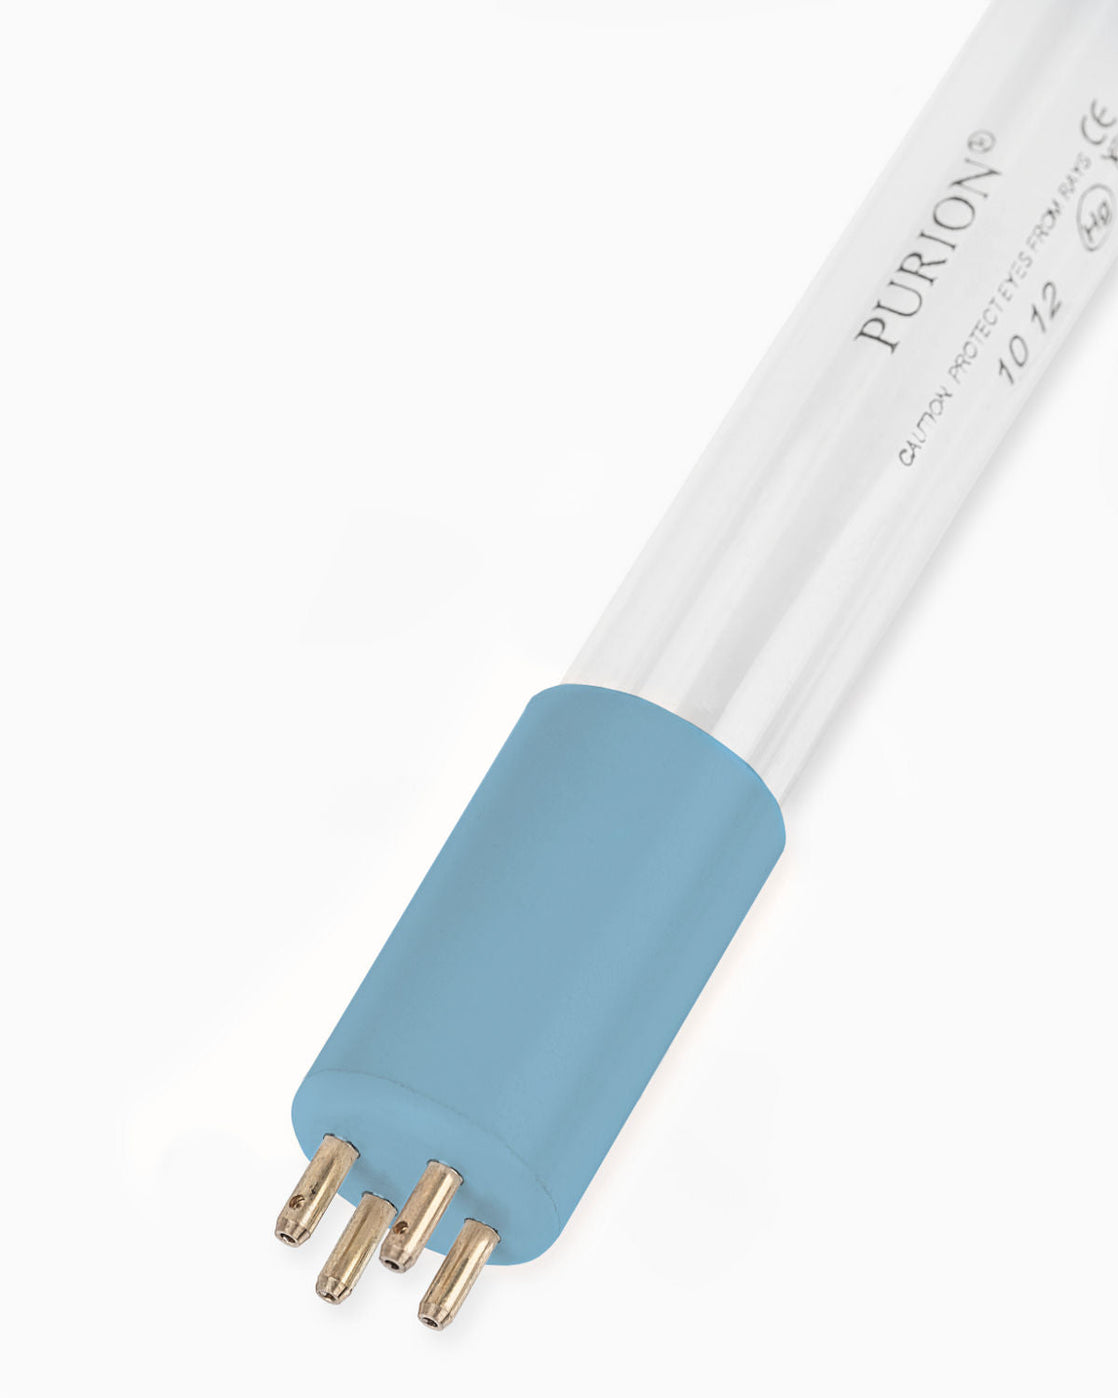 Eine blaue PURION 1000 H OPD-Lichtröhre auf weißem Hintergrund.